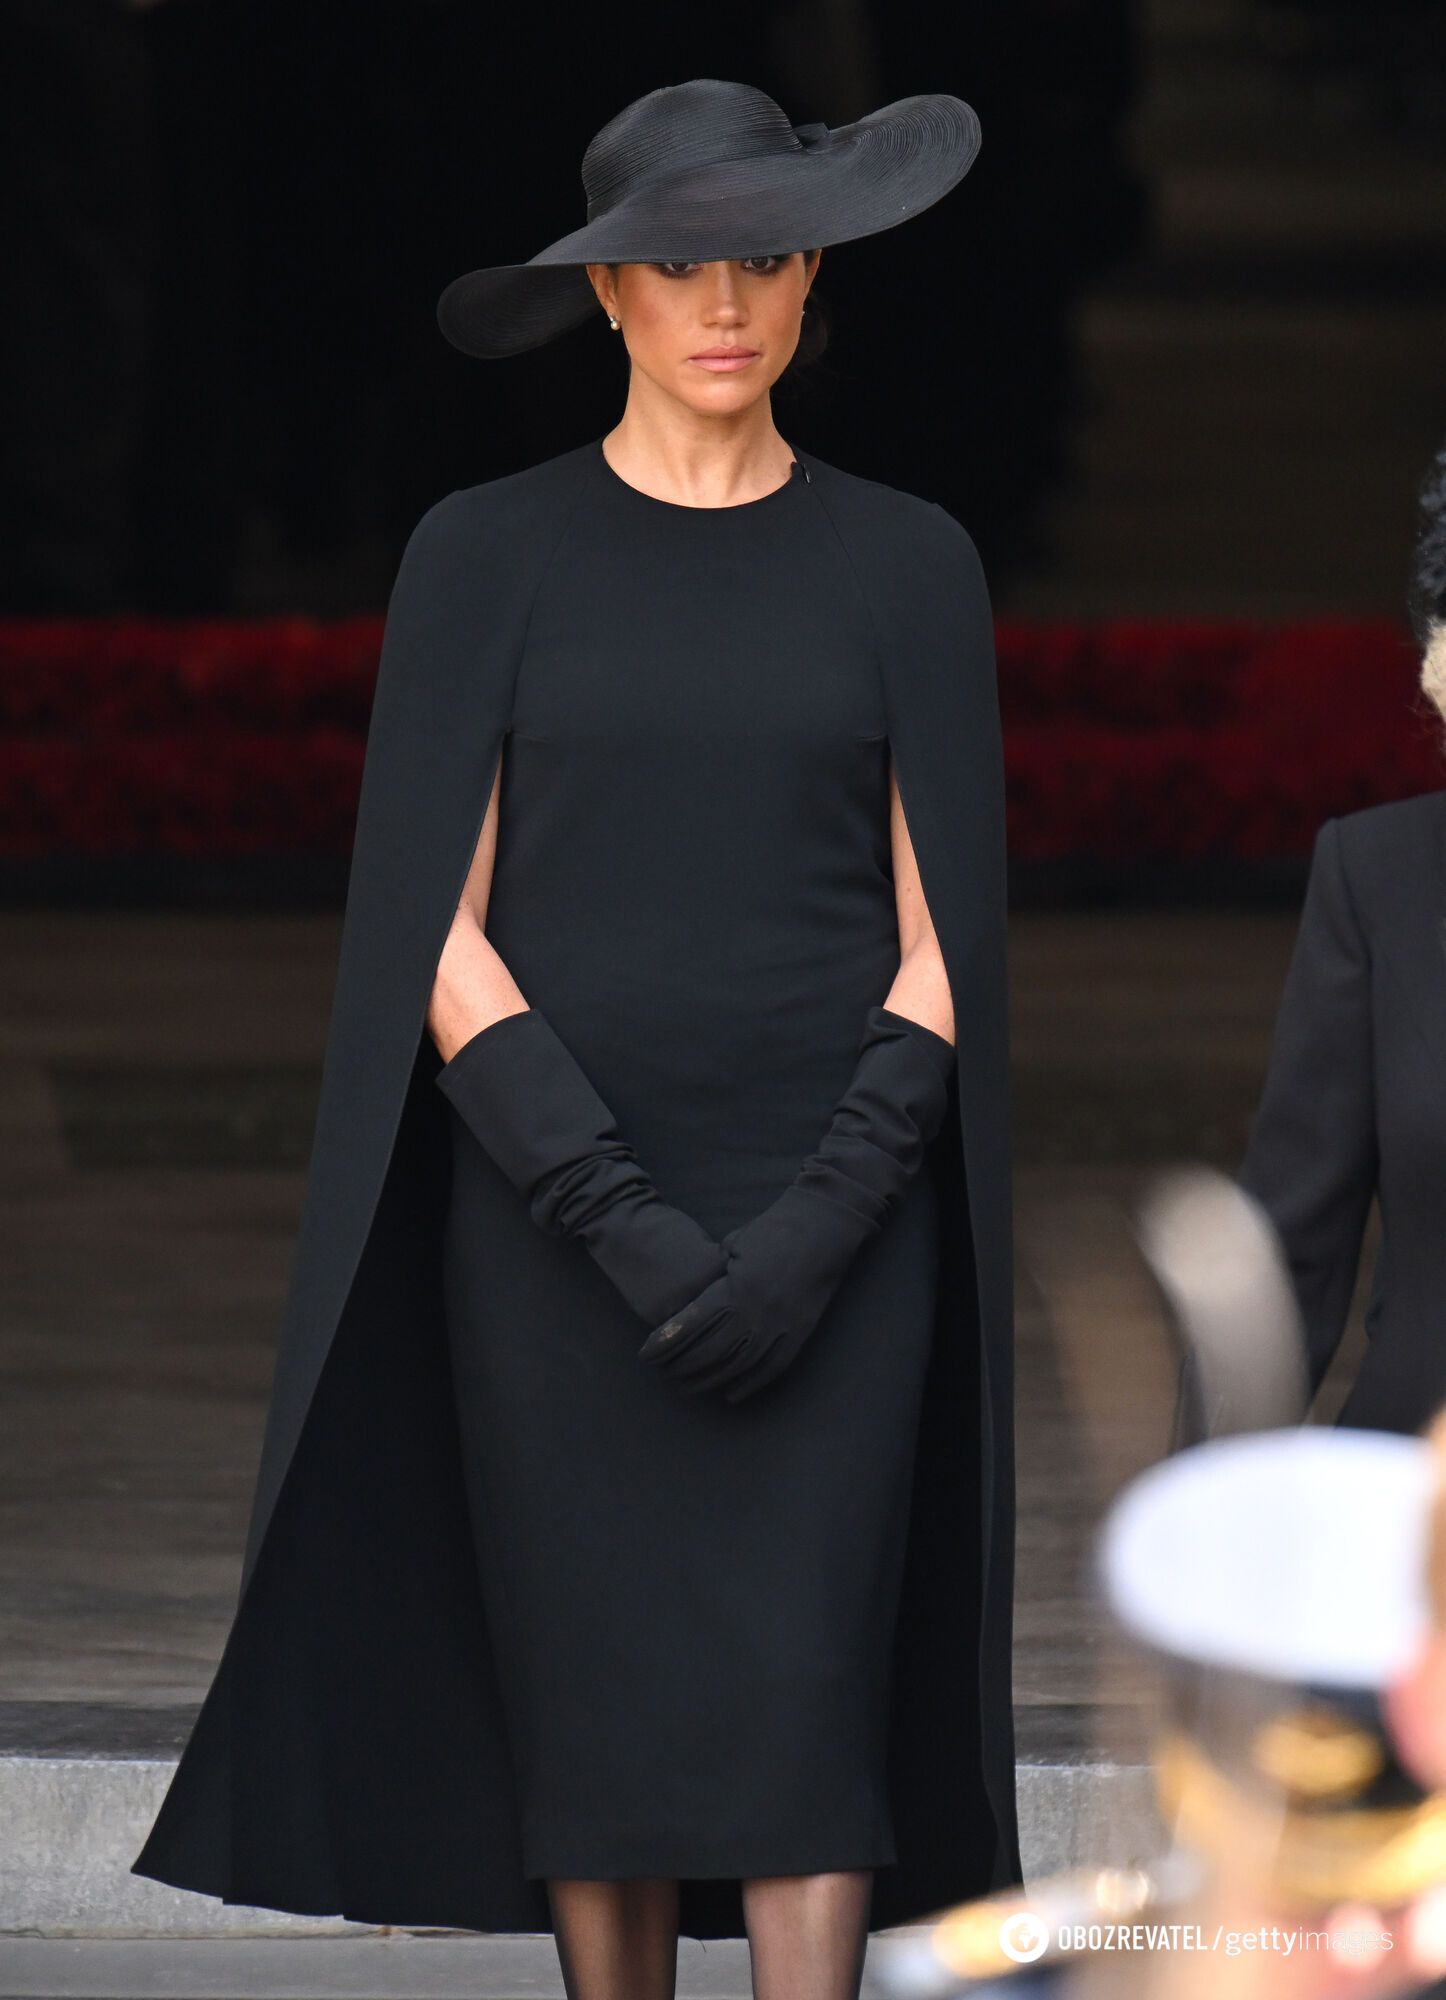 Стало известно, почему Кейт Миддлтон надела на похороны королевы "траурную вуаль", а Меган Маркл – черную шляпку